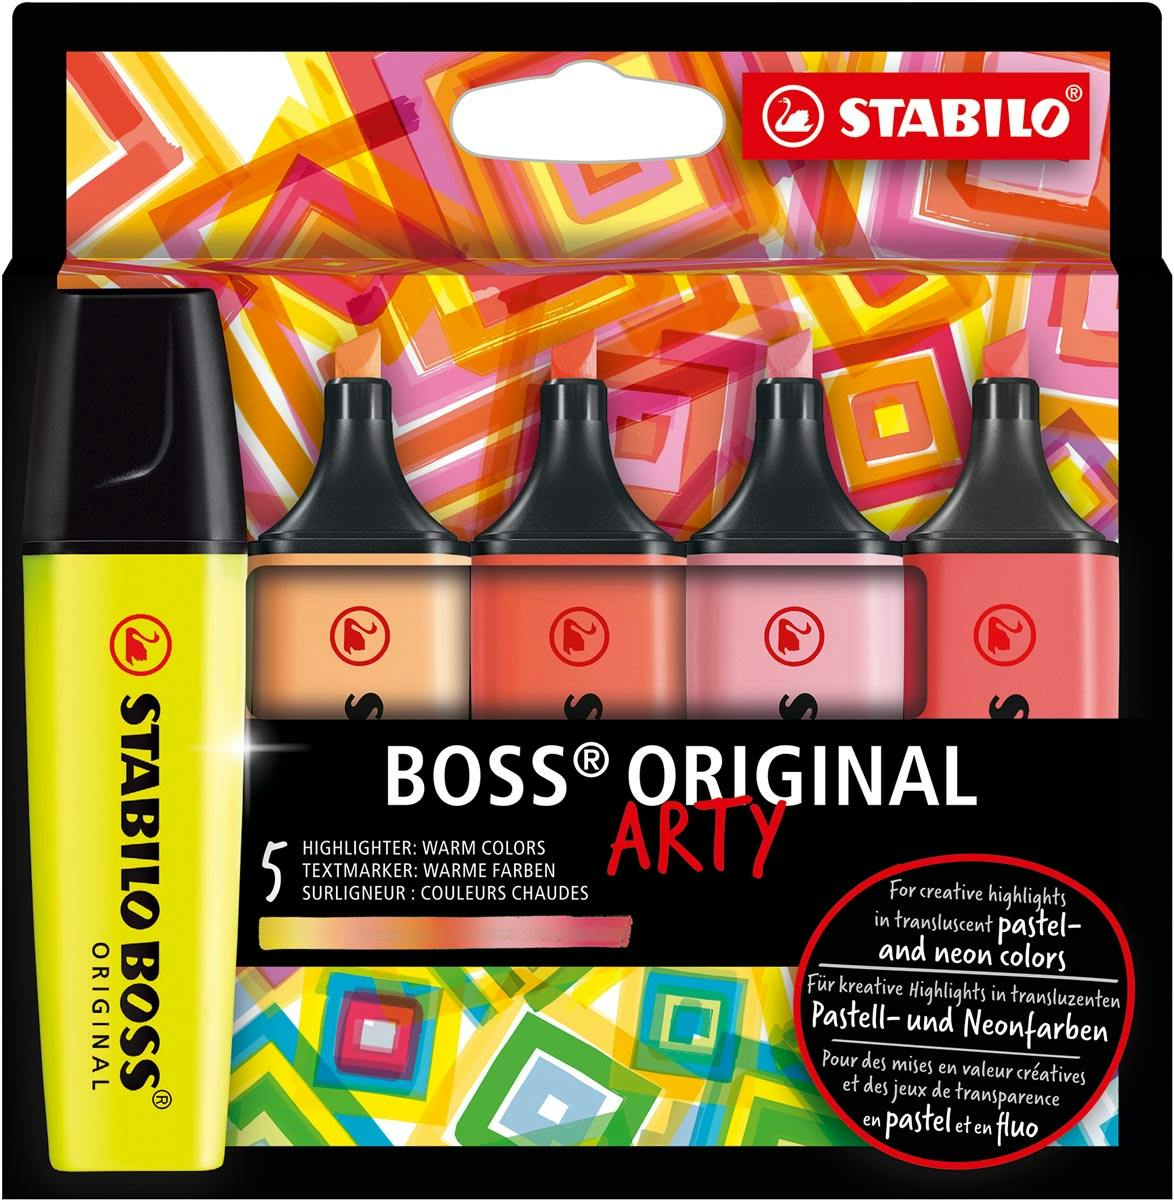 STABILO 5 surligneurs BOSS ORIGINAL ARTY couleurs chaudes